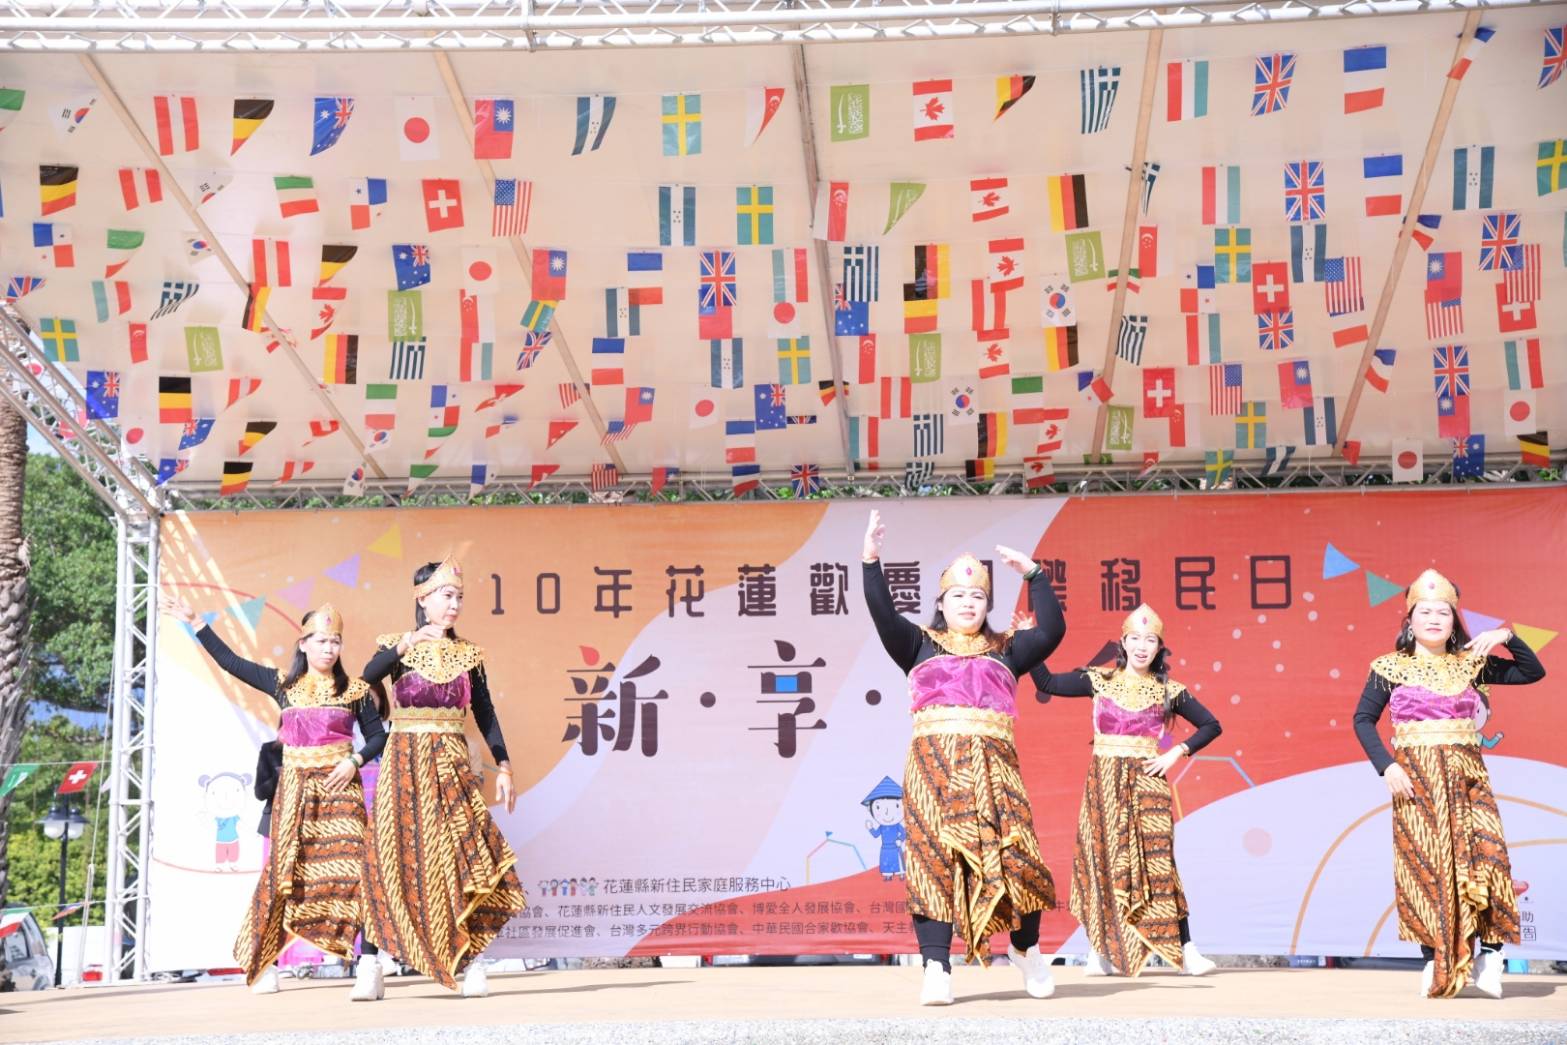 Huyện Hoa Liên tổ chức hoạt động văn hóa chào mừng Ngày Quốc tế Di dân 2021. (Nguồn ảnh: chính quyền huyện Hoa Liên)